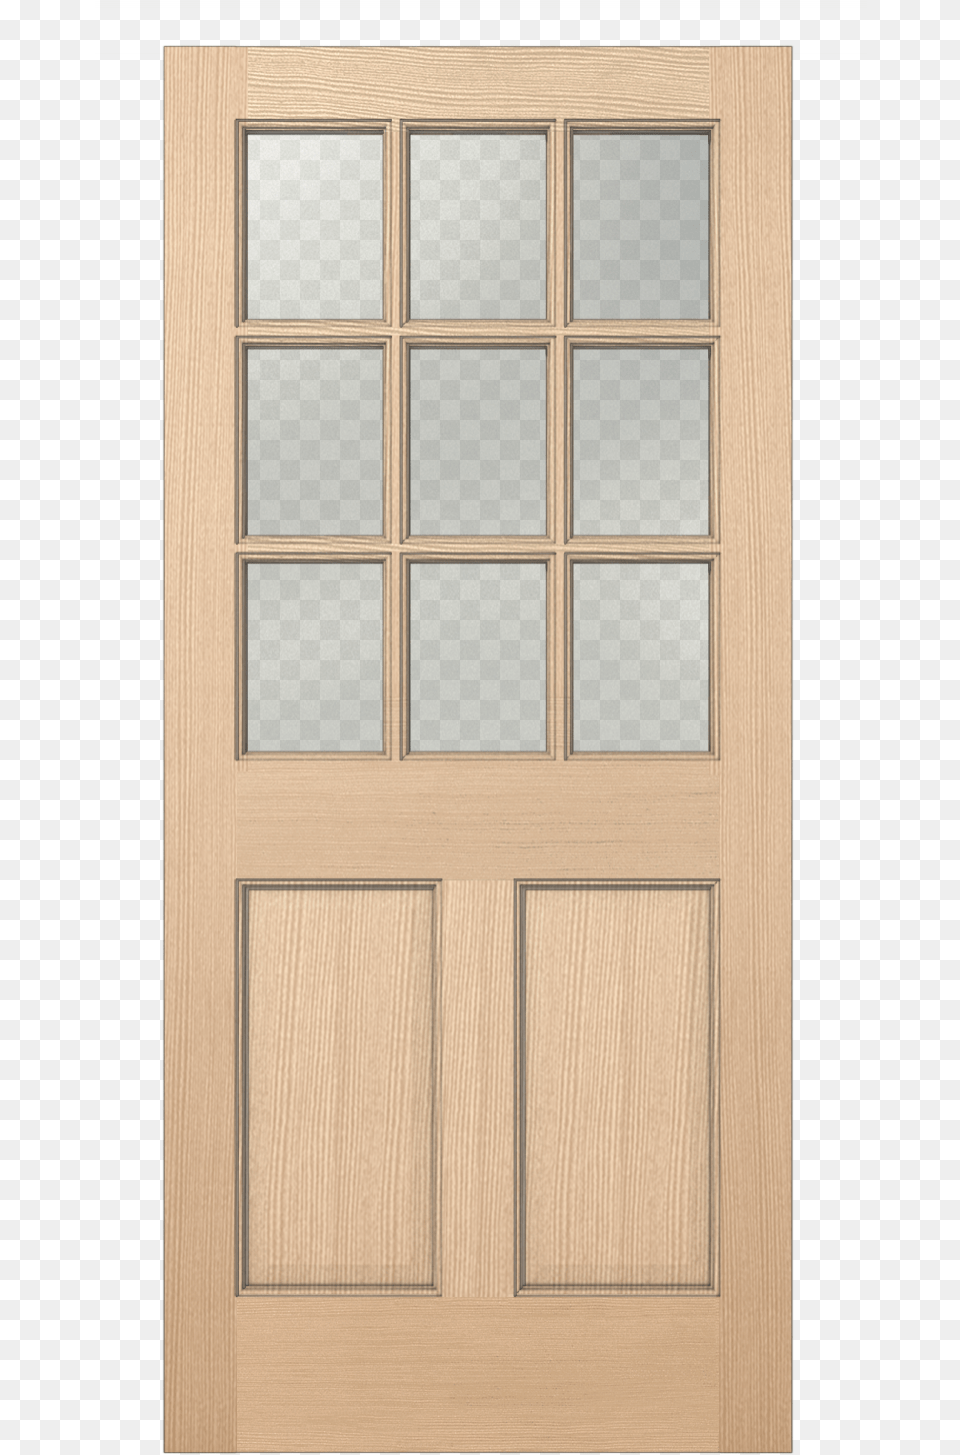 Authentic Wood Glass Panel Exterior Door Screen Door, Architecture, Building, French Door, House Free Transparent Png